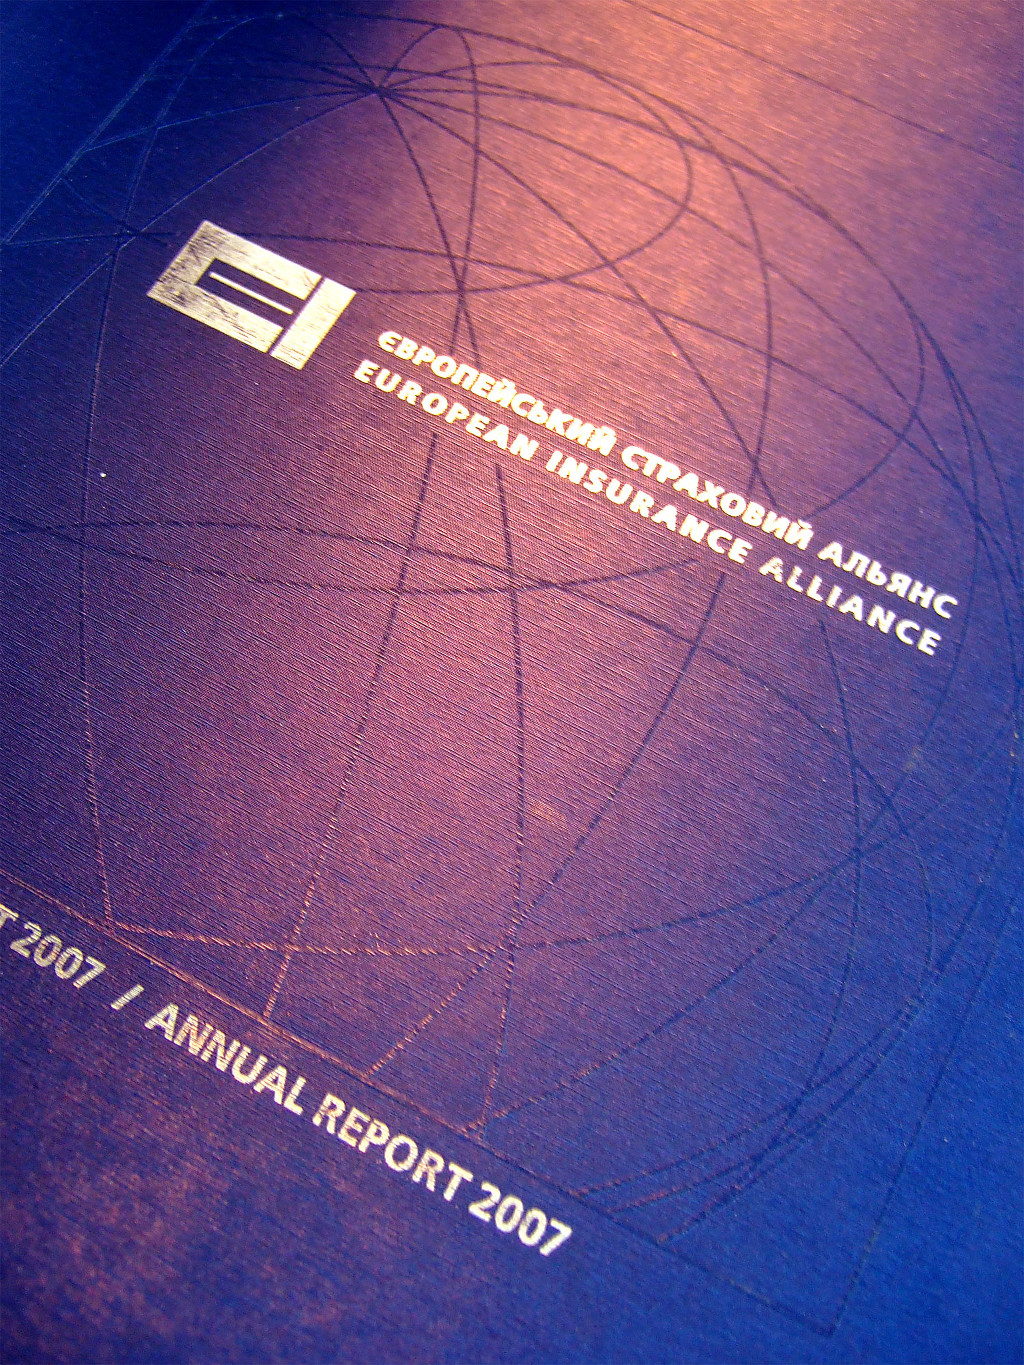 Друк каталогів «Річний звіт European Insurance Alliance». Поліграфія друкарні Макрос, виготовлення каталогів, специфікація 964977-9